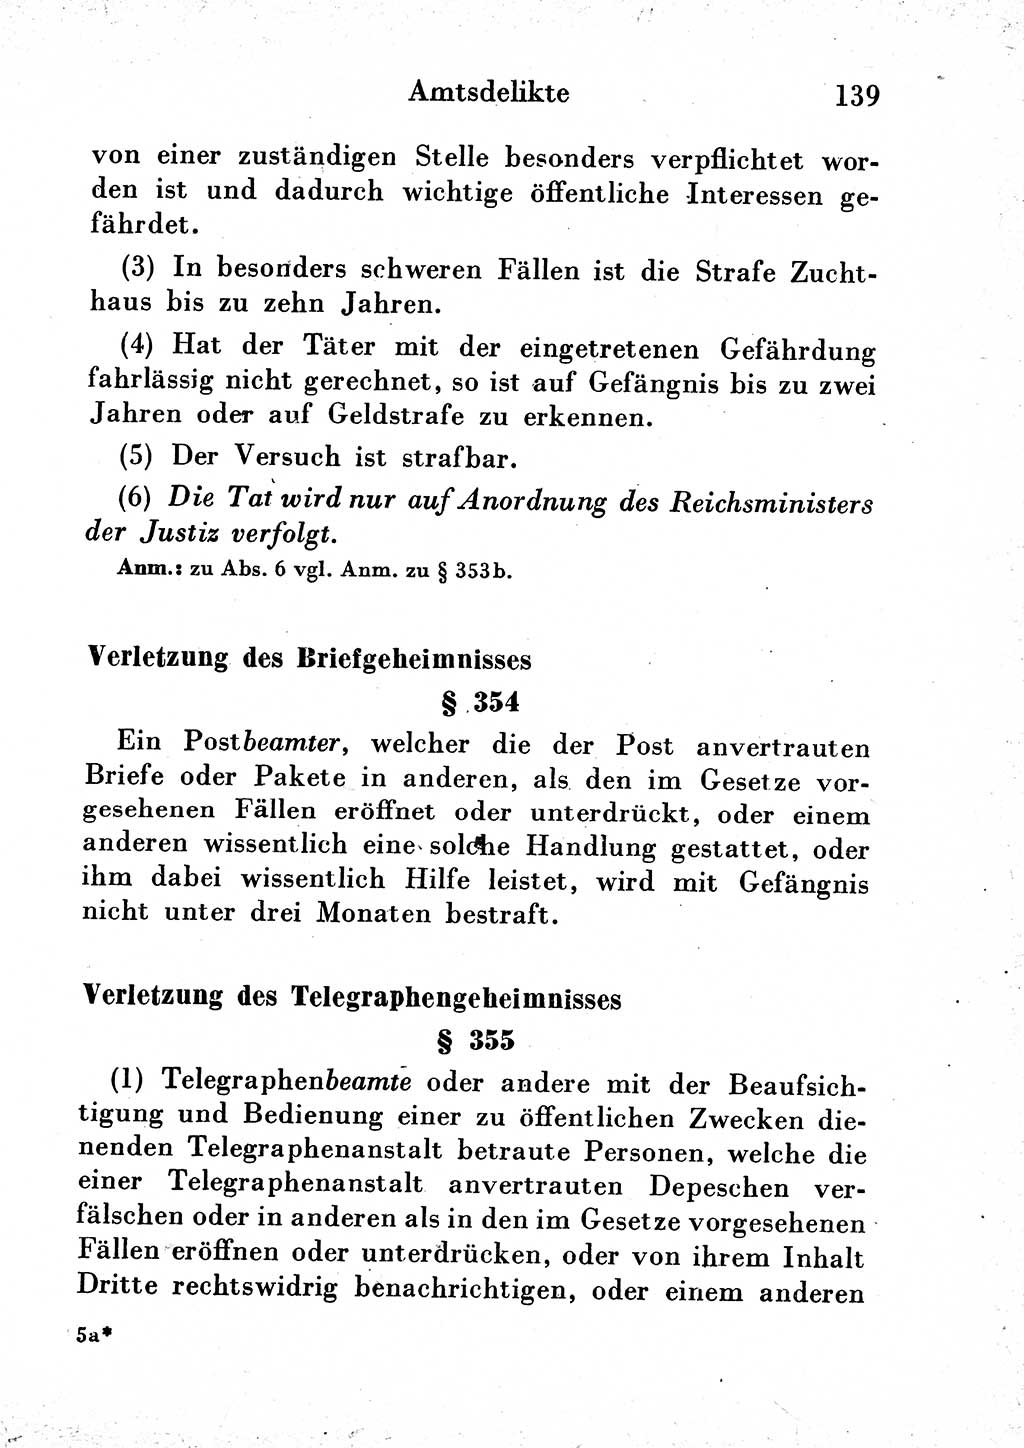 Strafgesetzbuch (StGB) und andere Strafgesetze [Deutsche Demokratische Republik (DDR)] 1954, Seite 139 (StGB Strafges. DDR 1954, S. 139)